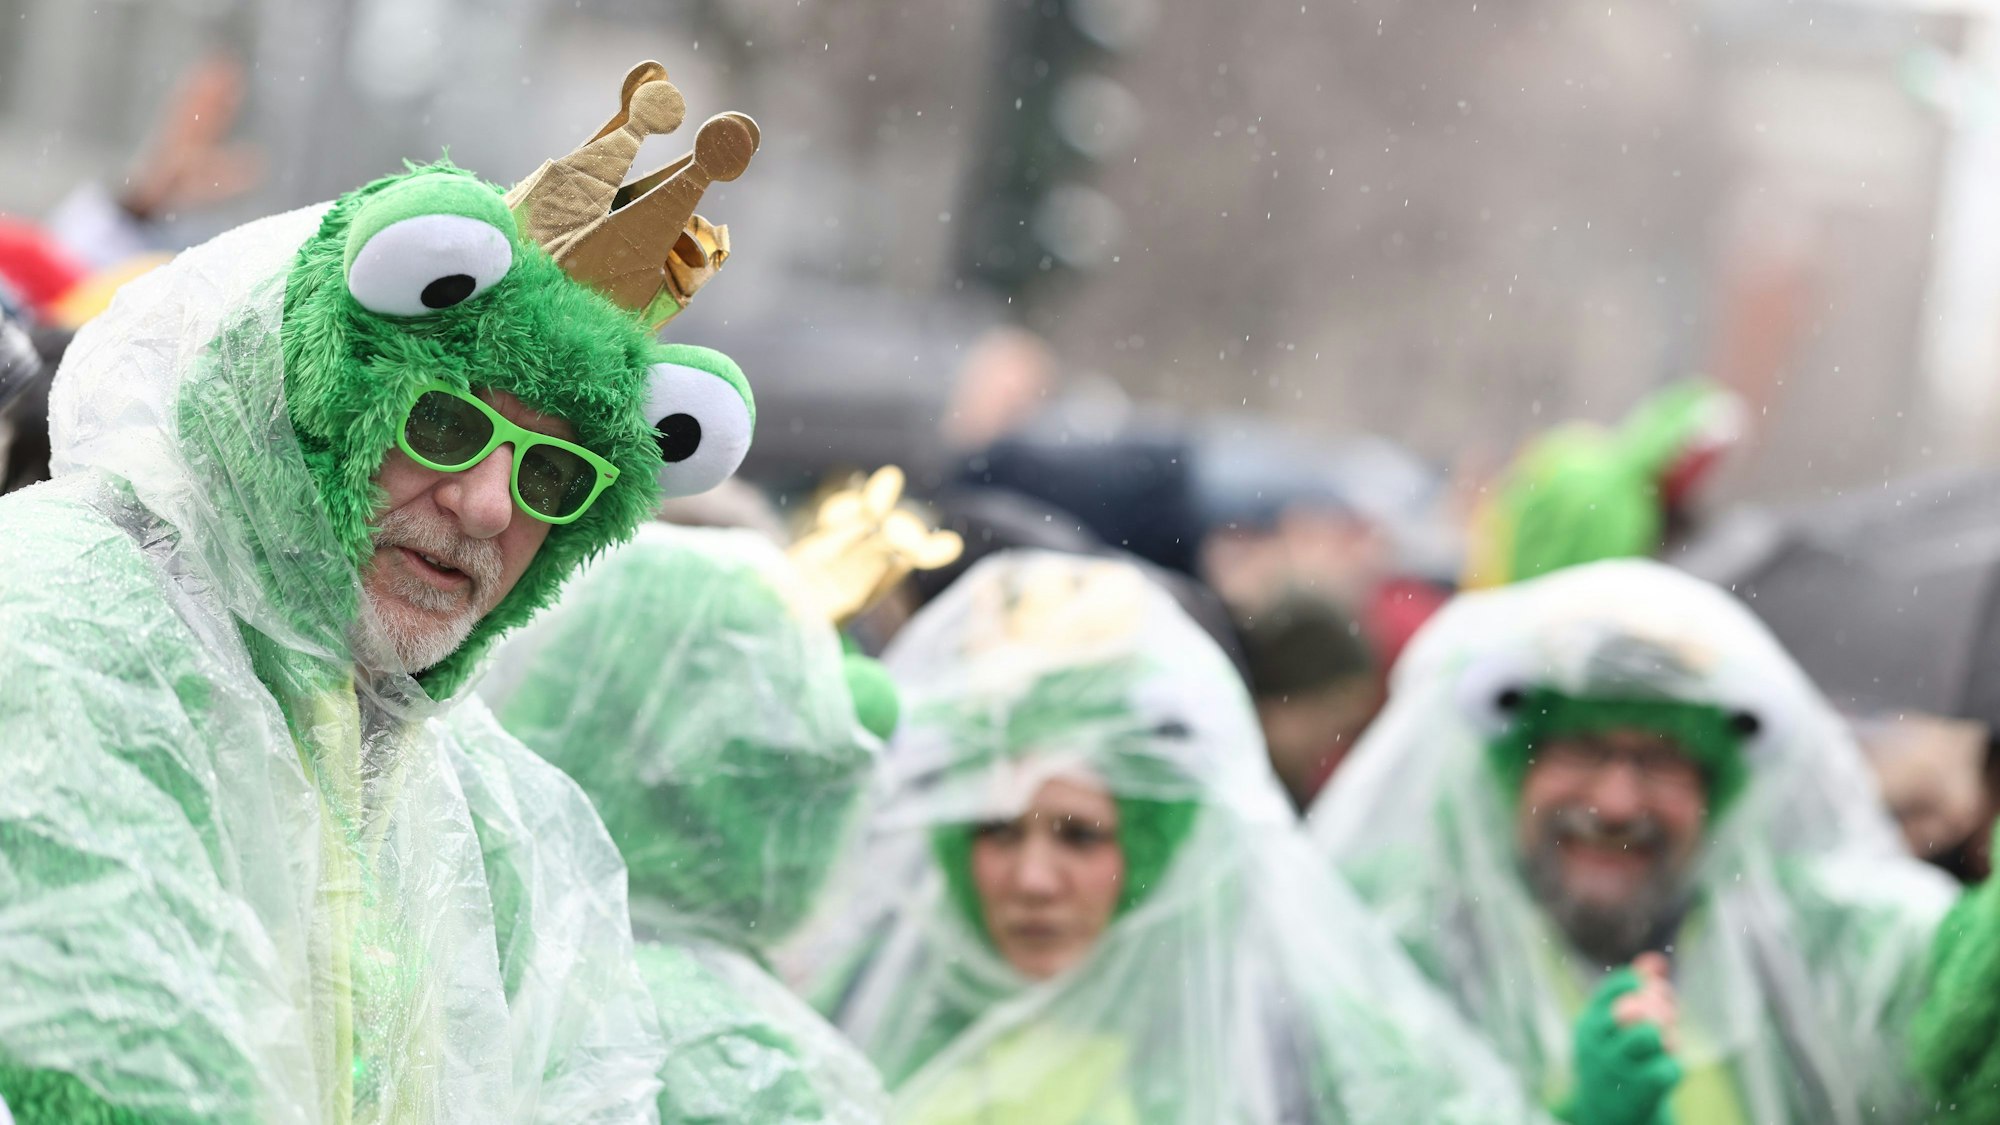 Ein kleiner Schauer hat genau die Kölner Innenstadt getroffen. Deshalb schützen sich diese als Frösche kostümierten Karnevalisten mit Regenumhängen.